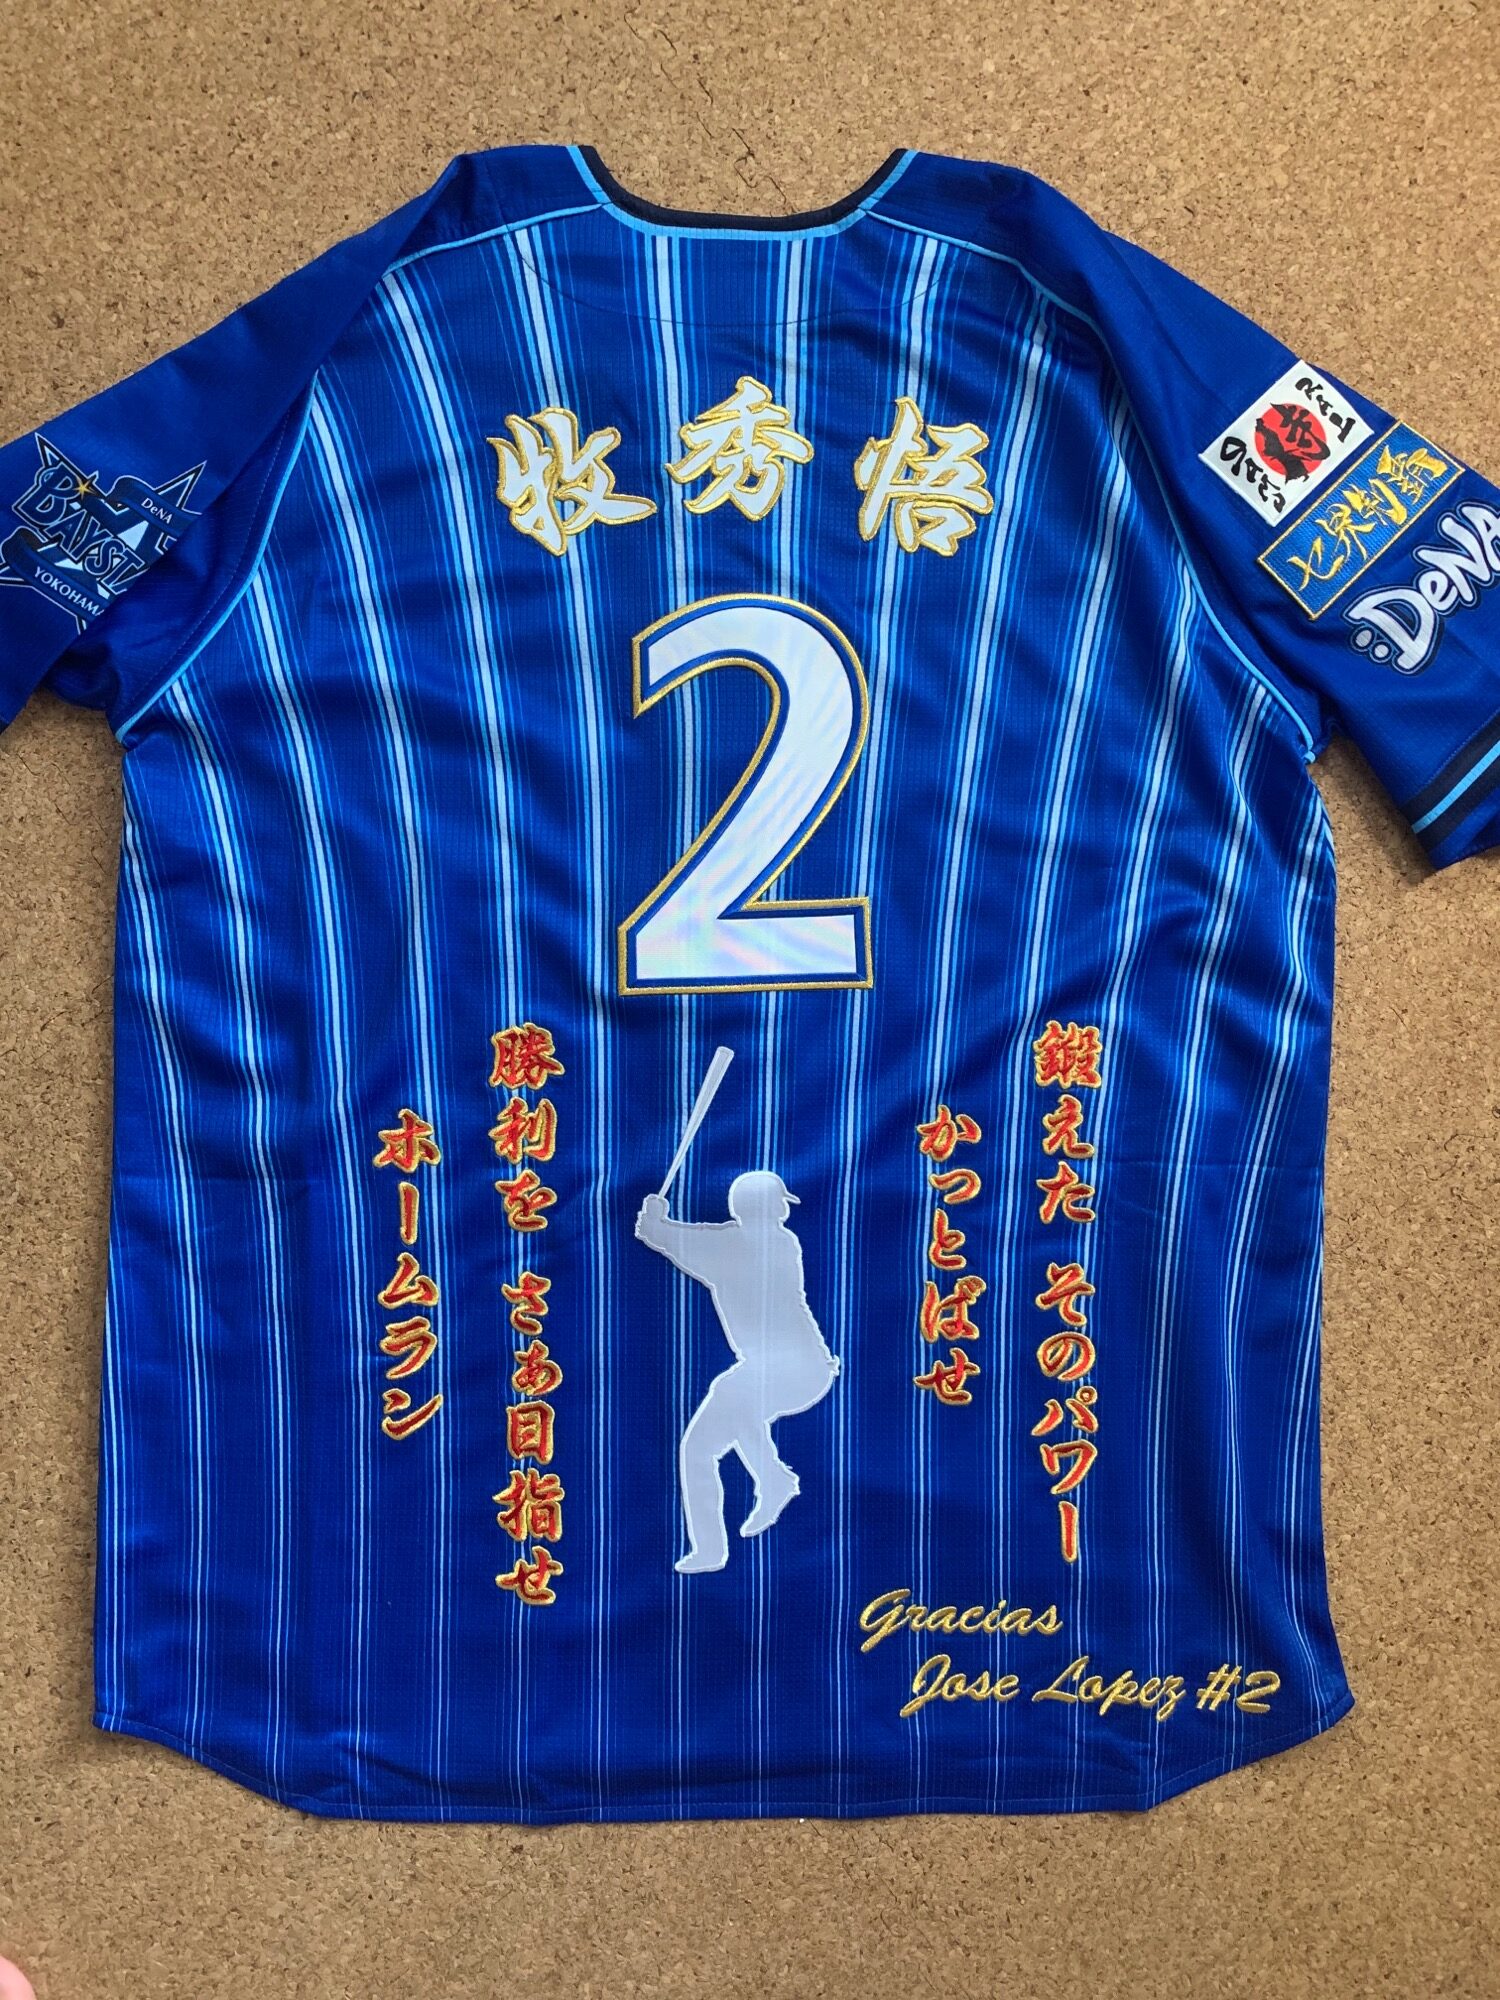 横浜DeNAベイスターズ」ビジターユニへの牧秀悟選手の刺繍 – お客様の 